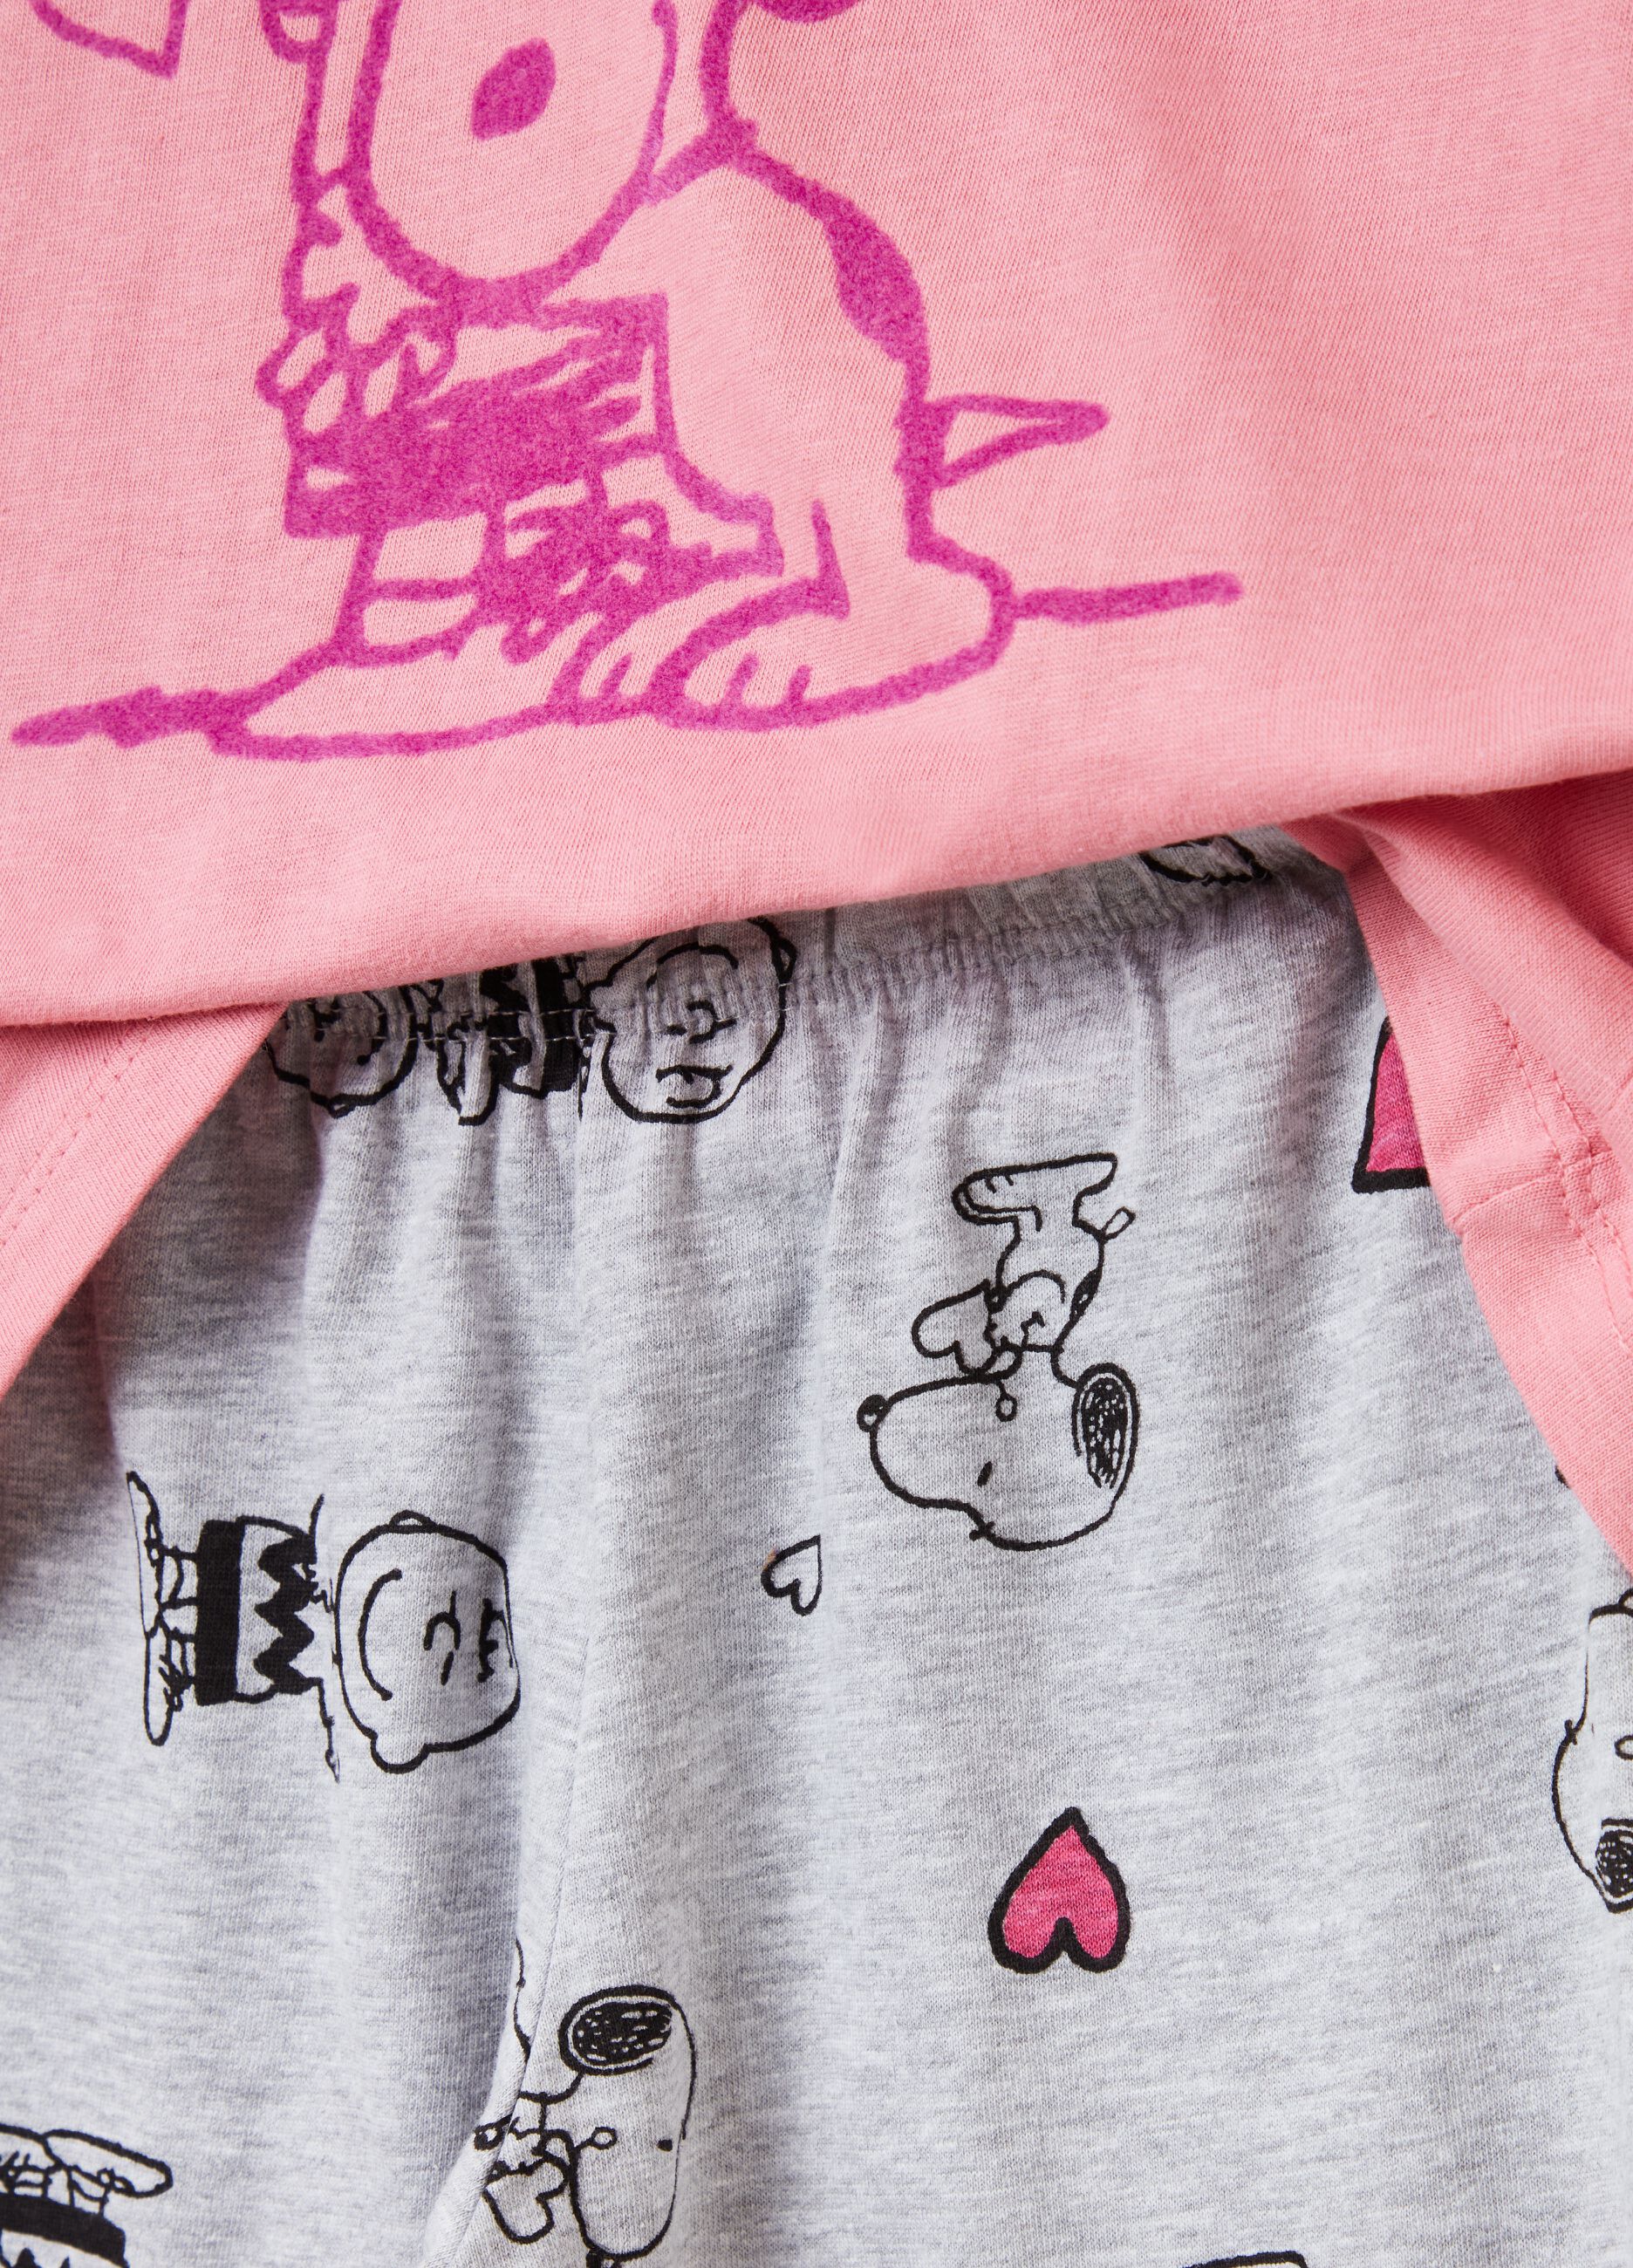 Long pyjamas with Snoopy print